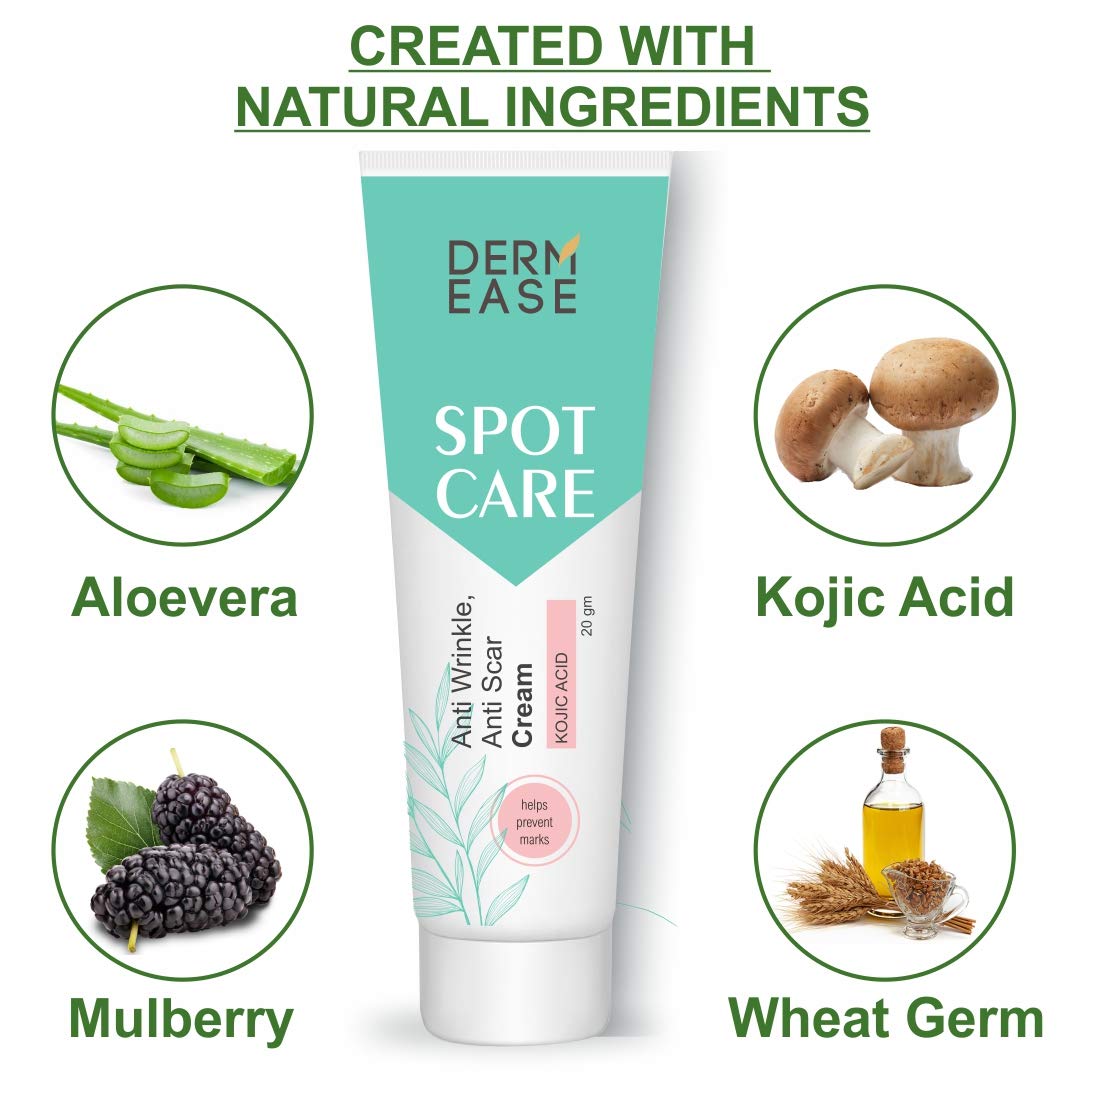 DERM EASE Spot Care Cream